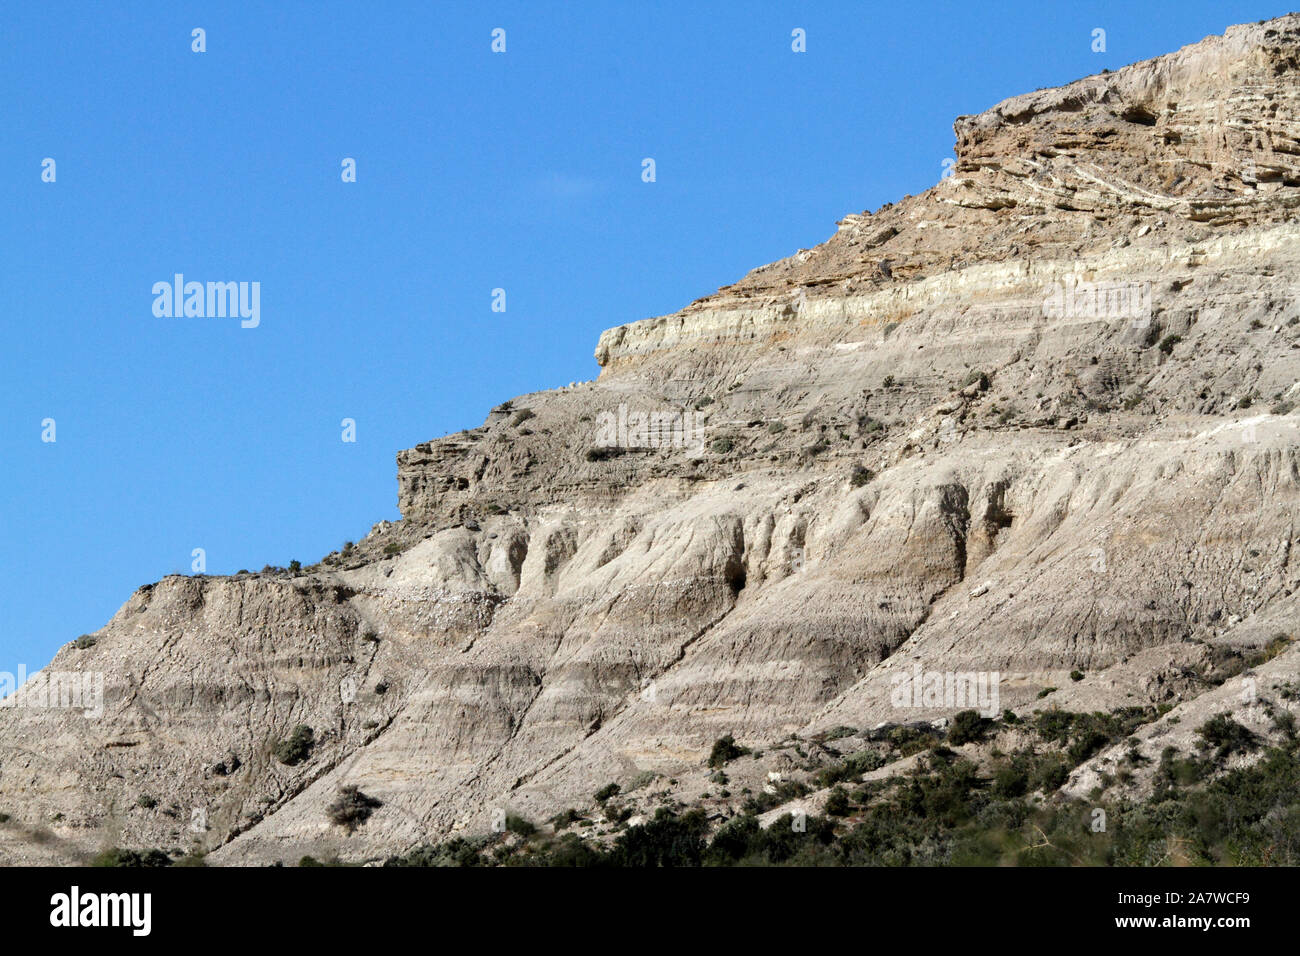 Sperone roccioso che mostra strati geologici di rocce previste. El Pedral, Chubut regione o provincia, Patagonia, Argentina. Foto Stock